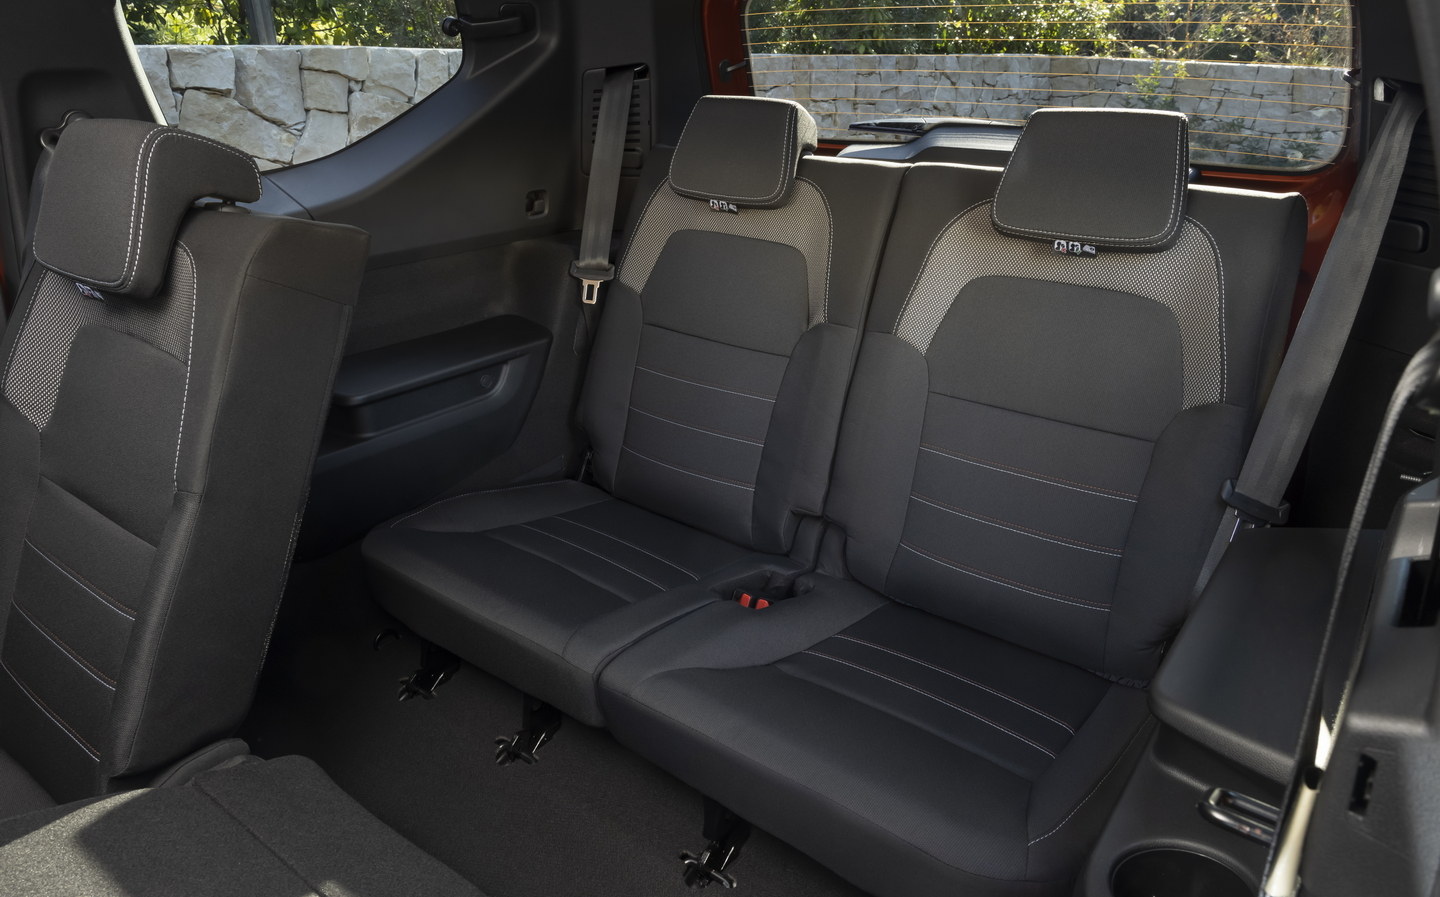 Dacia Jogger Review & Prices 2024